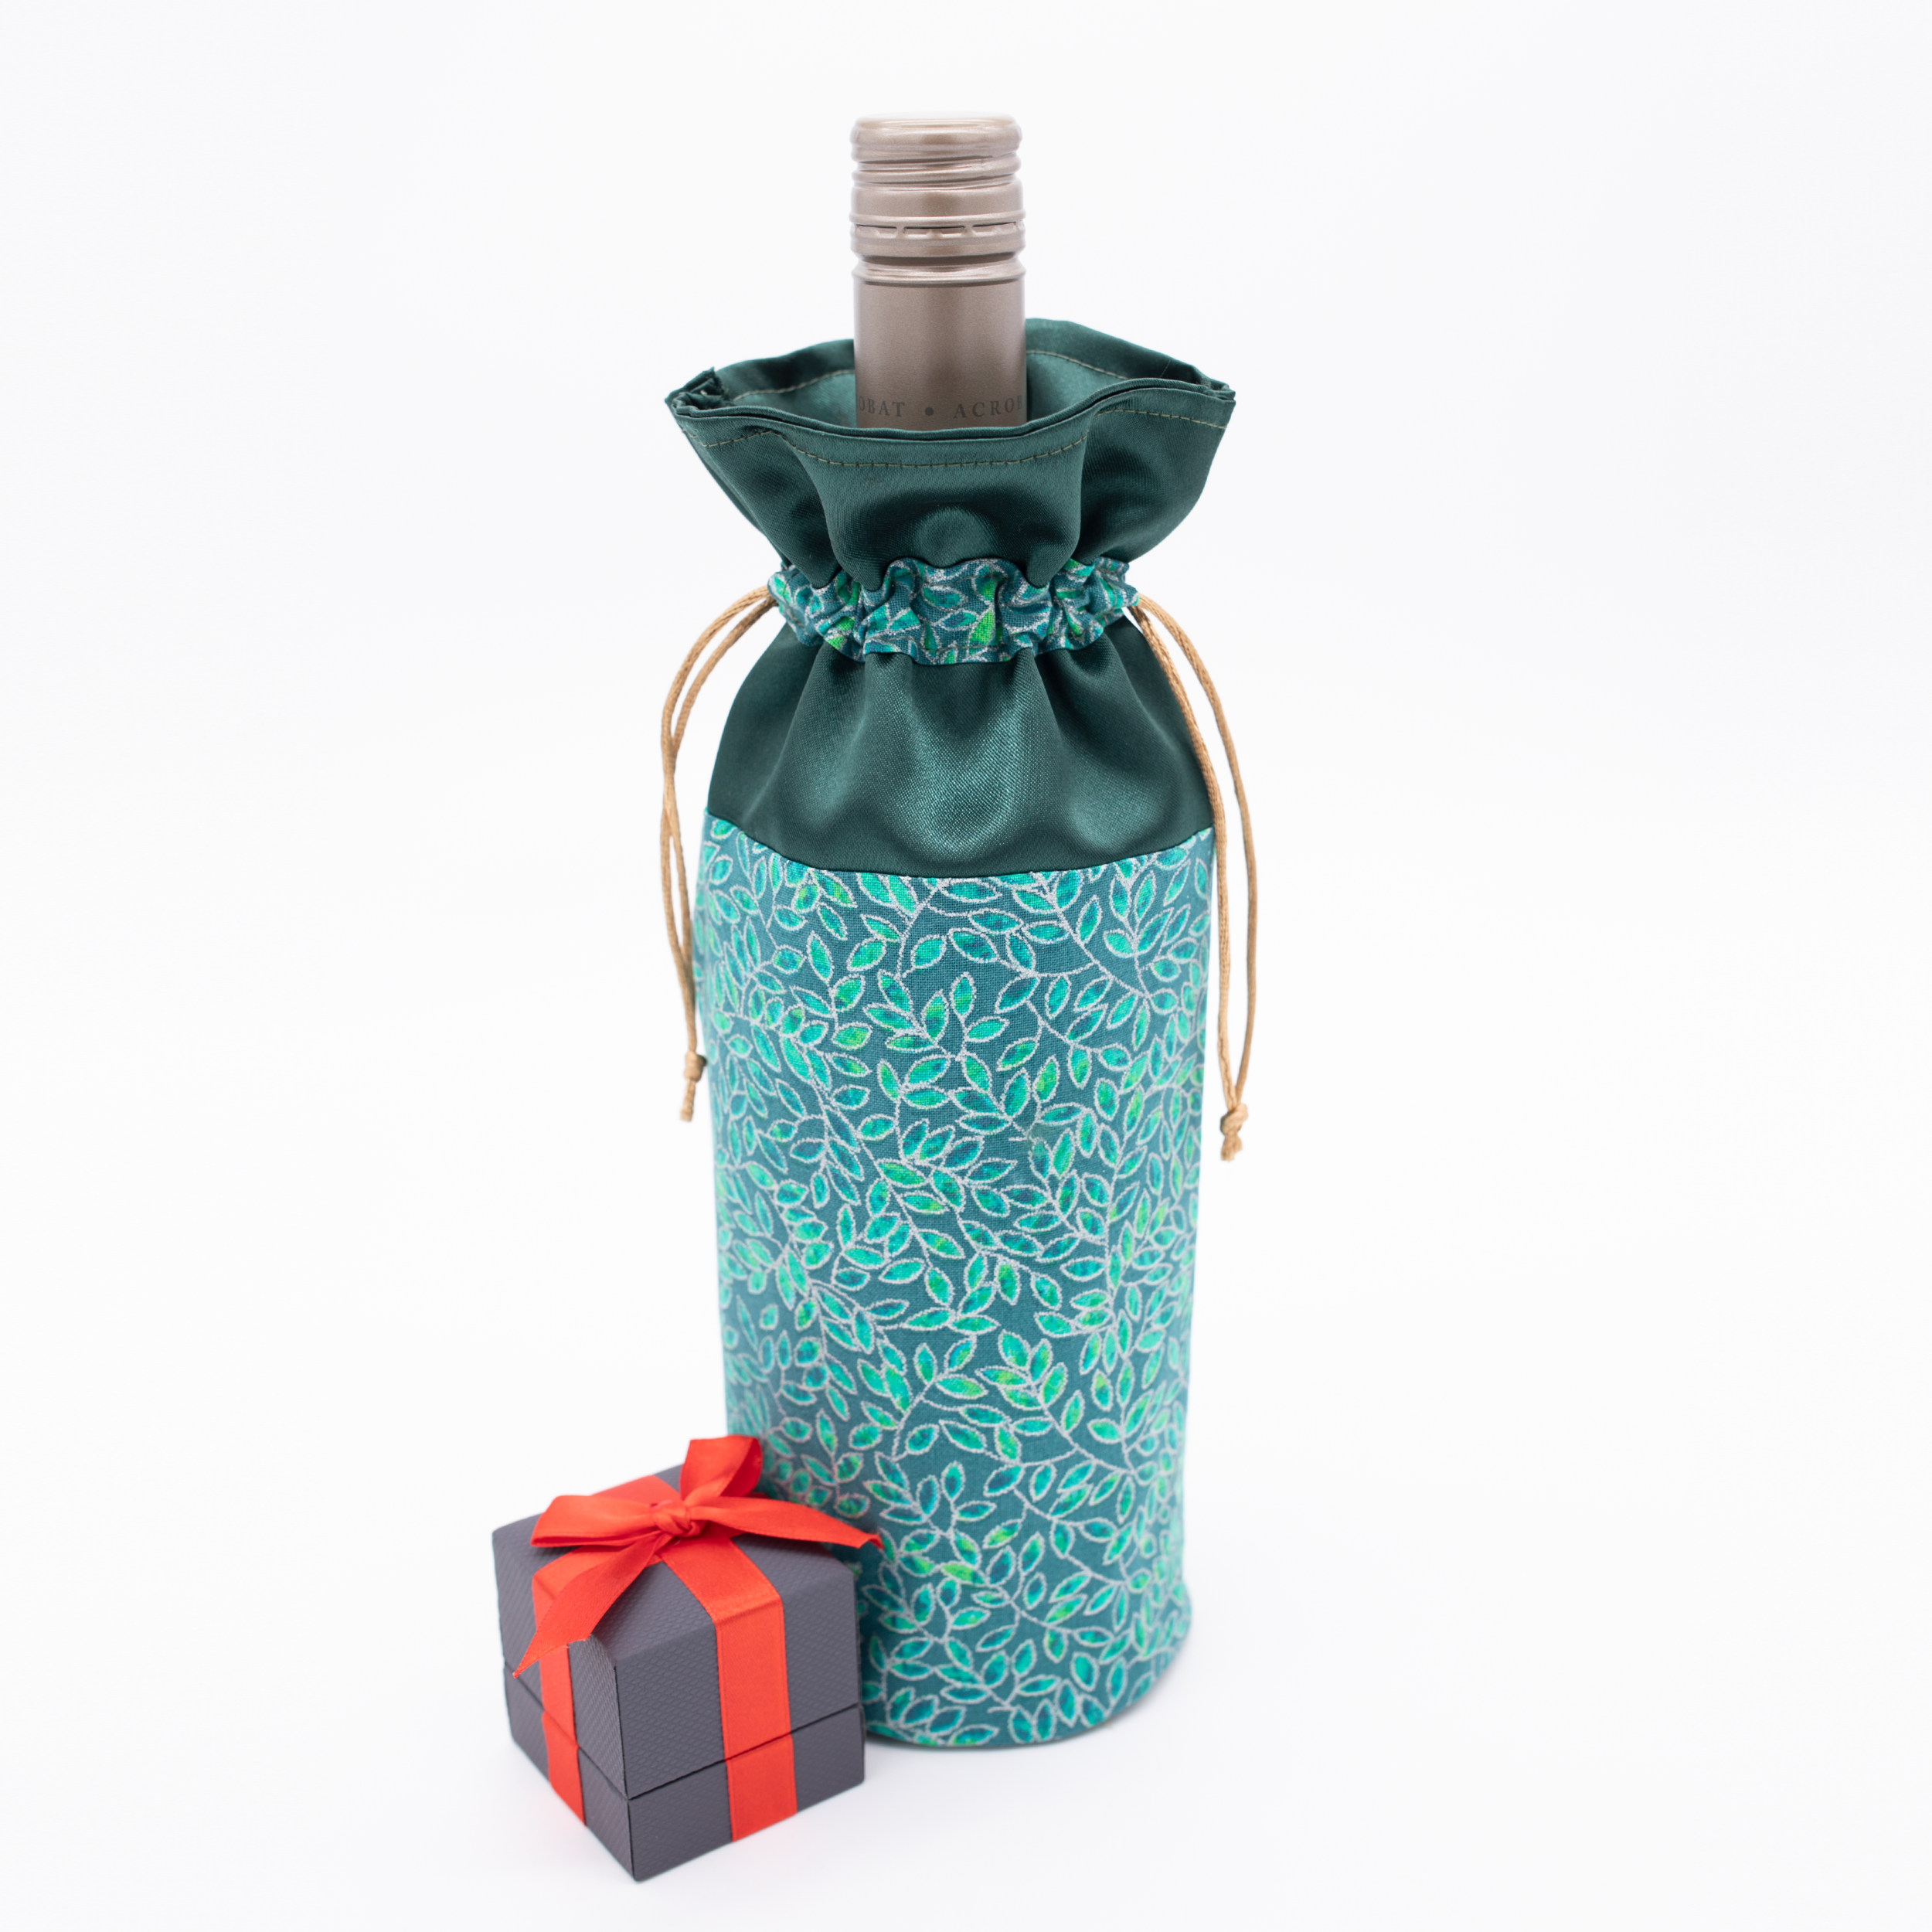 In Color Order Wine Bottle Drawstring Gift Bag Tutorial